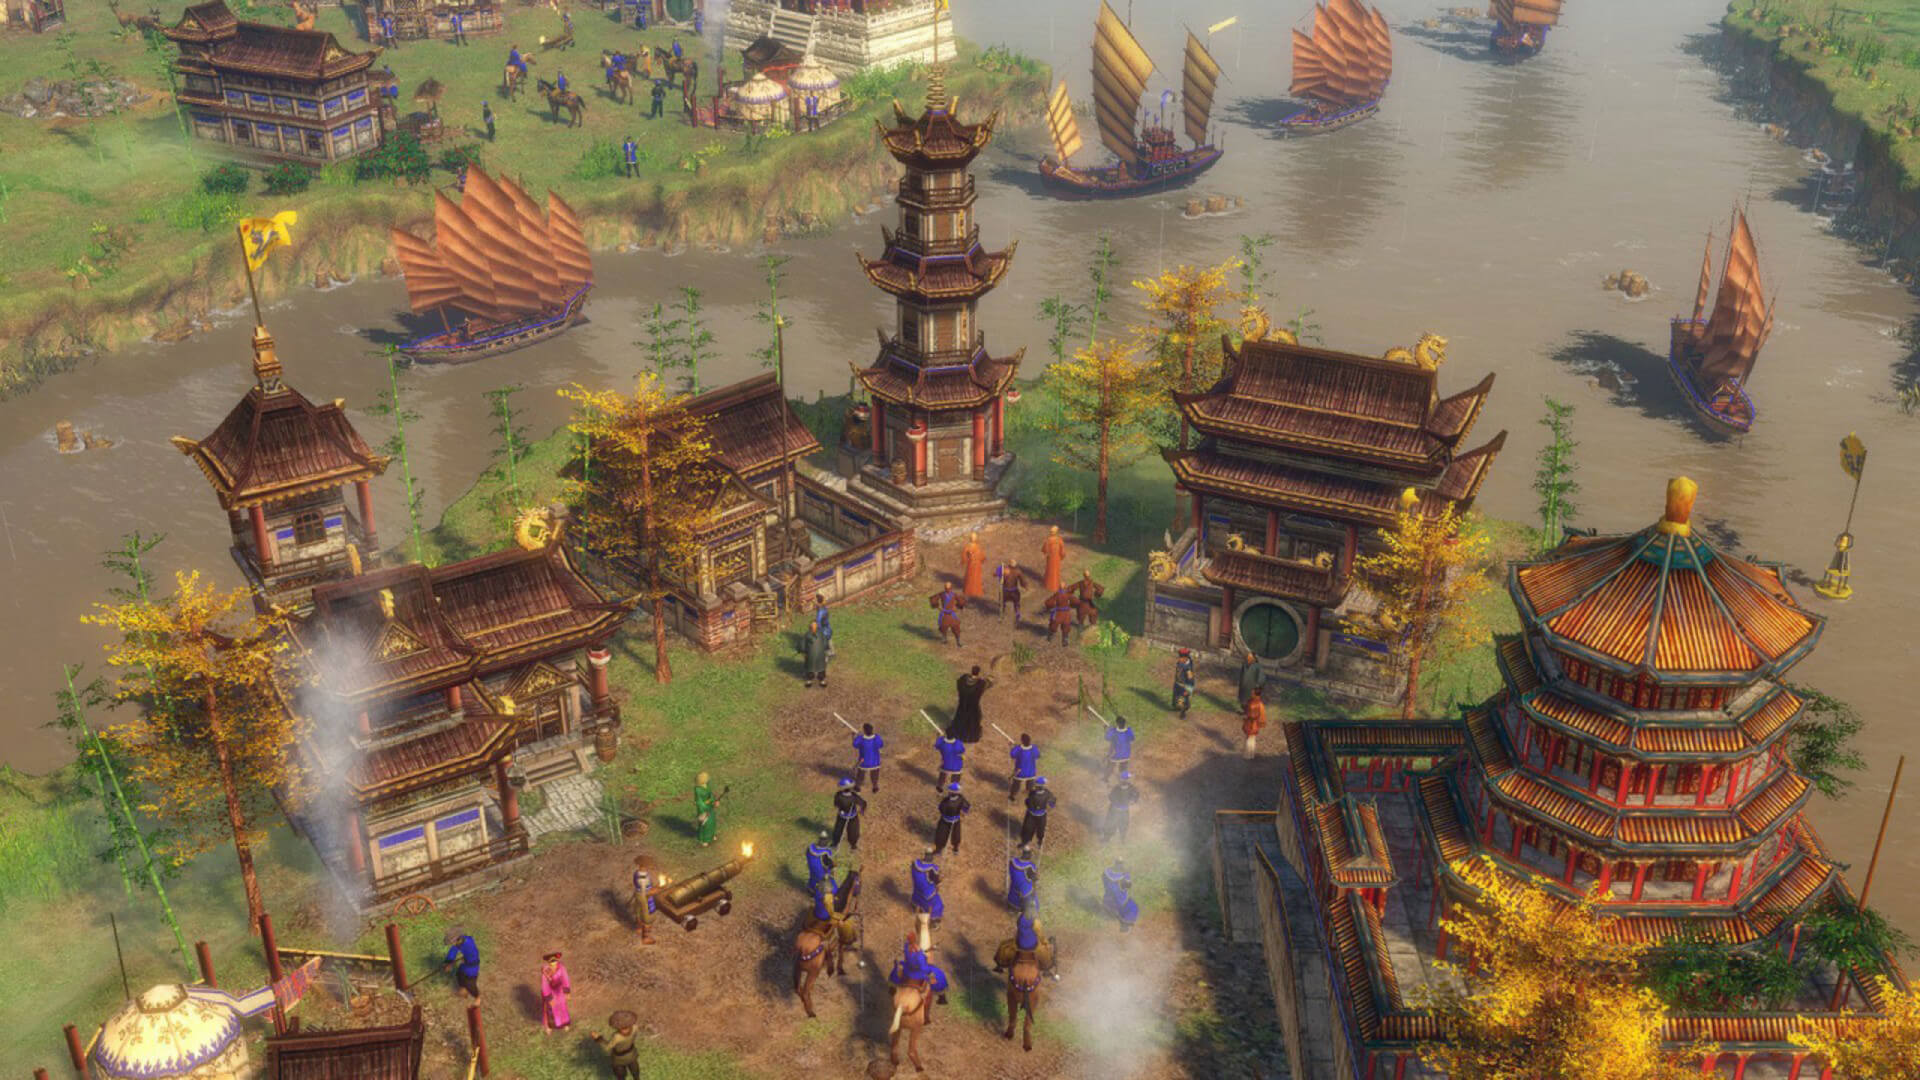 帝国时代（Age of Empires）Ⅲ 合集 1.0.5 历史类即时战略游戏 - 马可菠萝.jpg